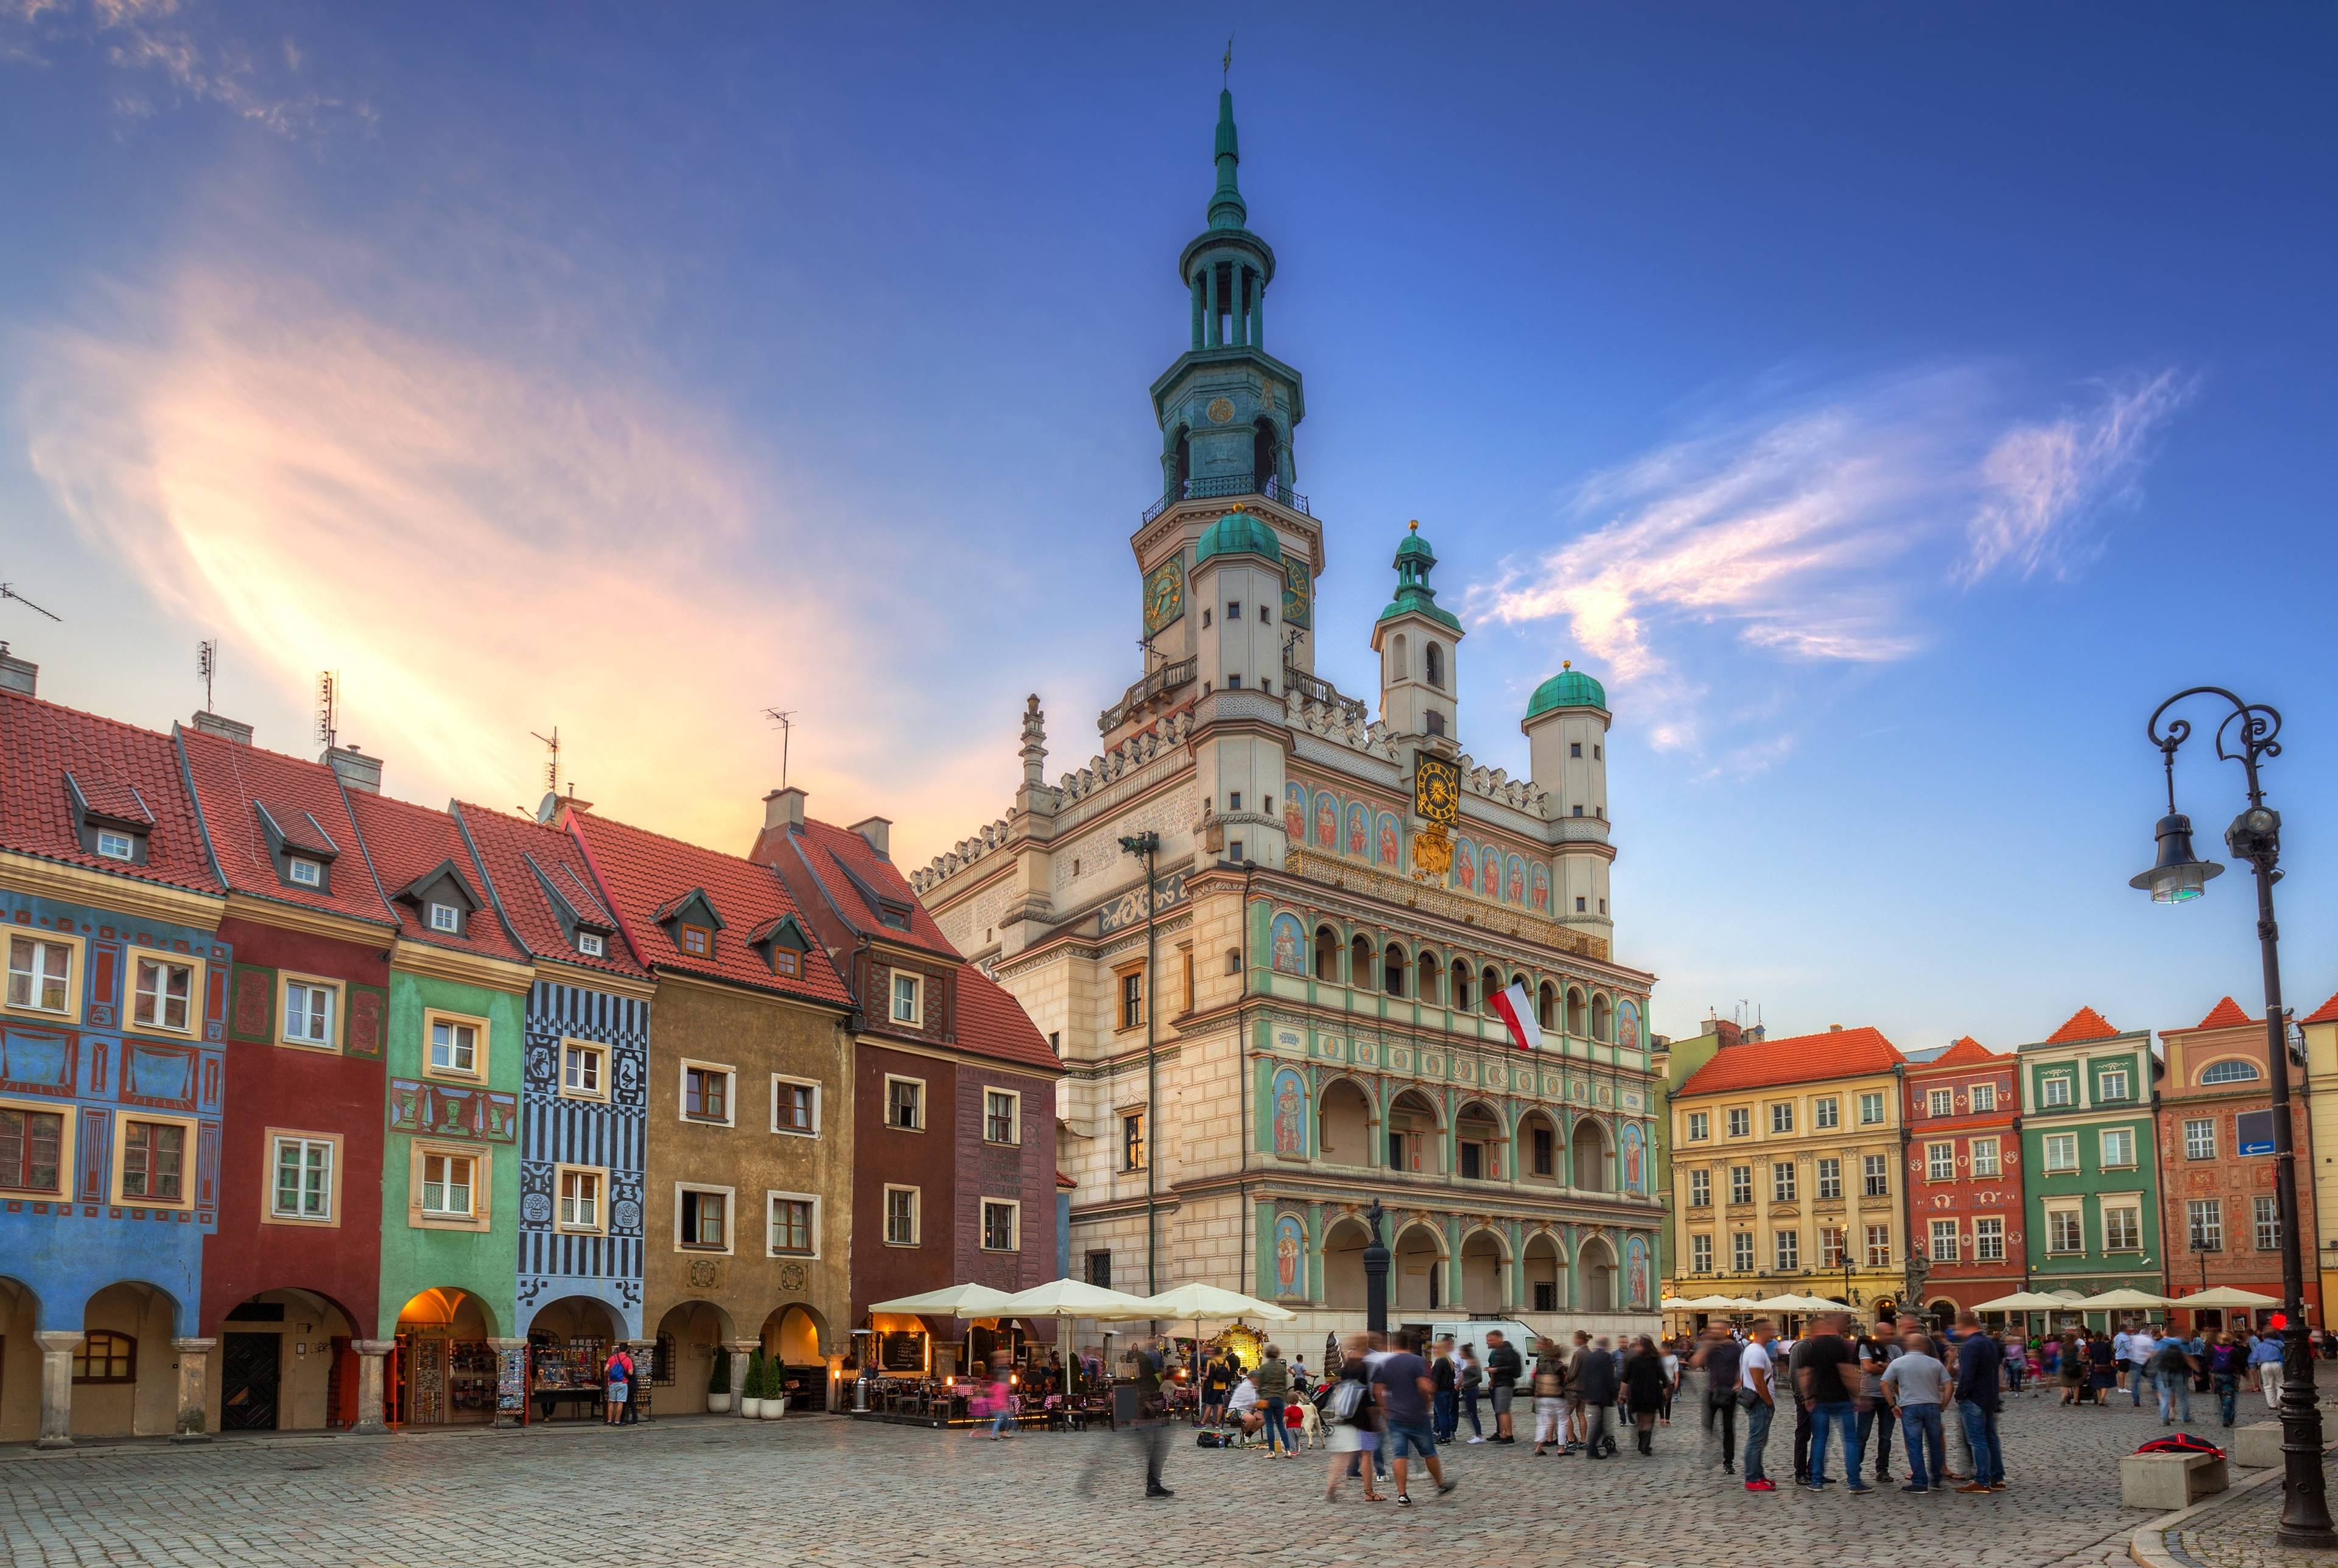 Torun e Poznan, due belle città polacche